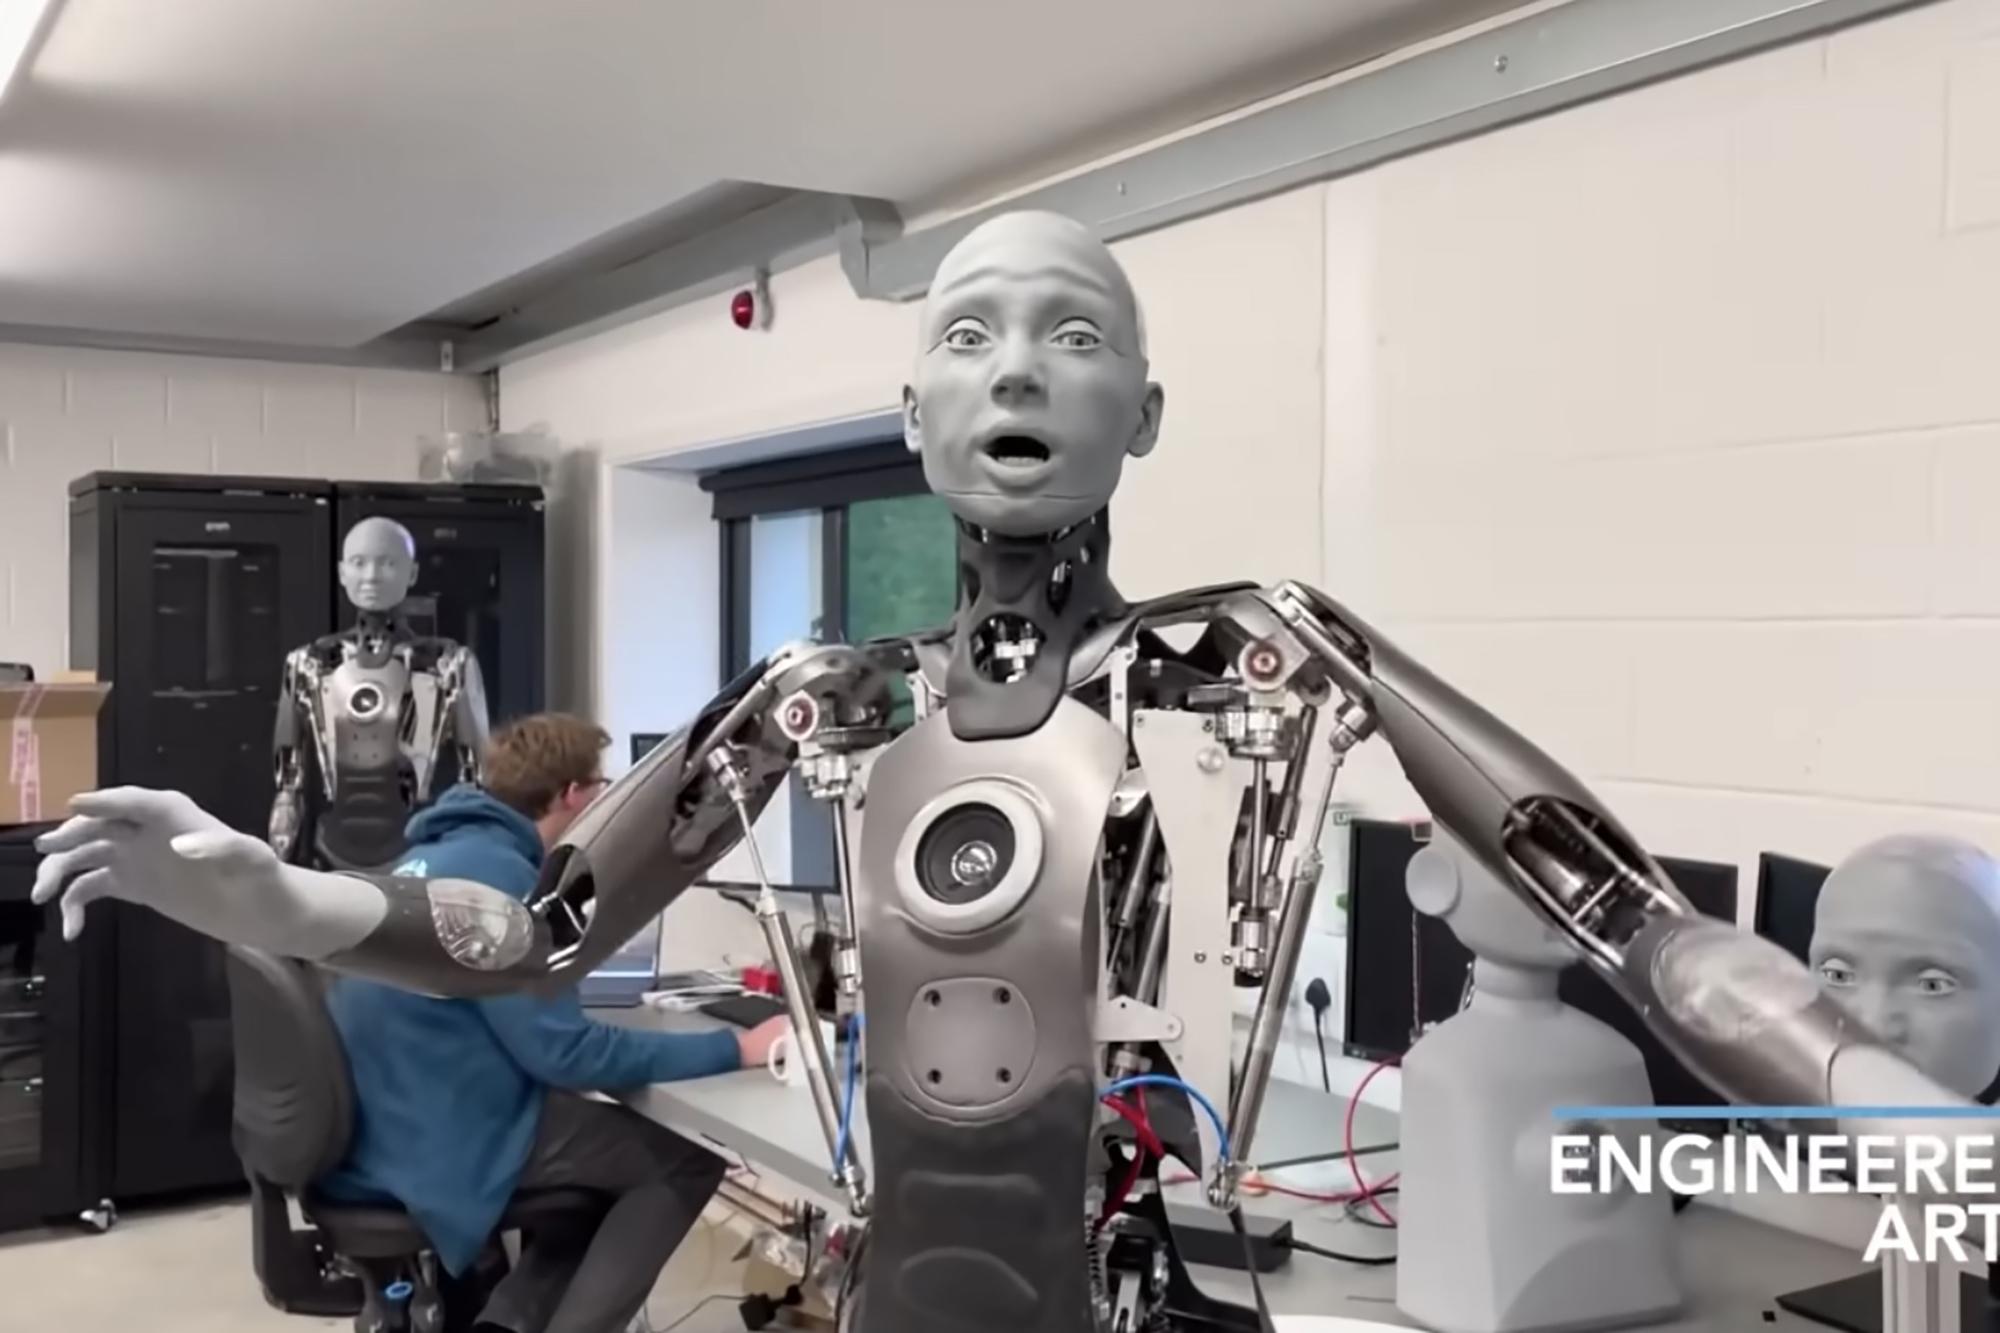 Sự thật là, một robot có biểu cảm sinh động cũng có thể xảy ra! Hãy xem và kinh ngạc khi chứng kiến chú robot thông minh này di chuyển và biểu hiện trạng thái cảm xúc của mình, cảm giác như bạn đang thực sự giao tiếp với một sinh vật thông minh.